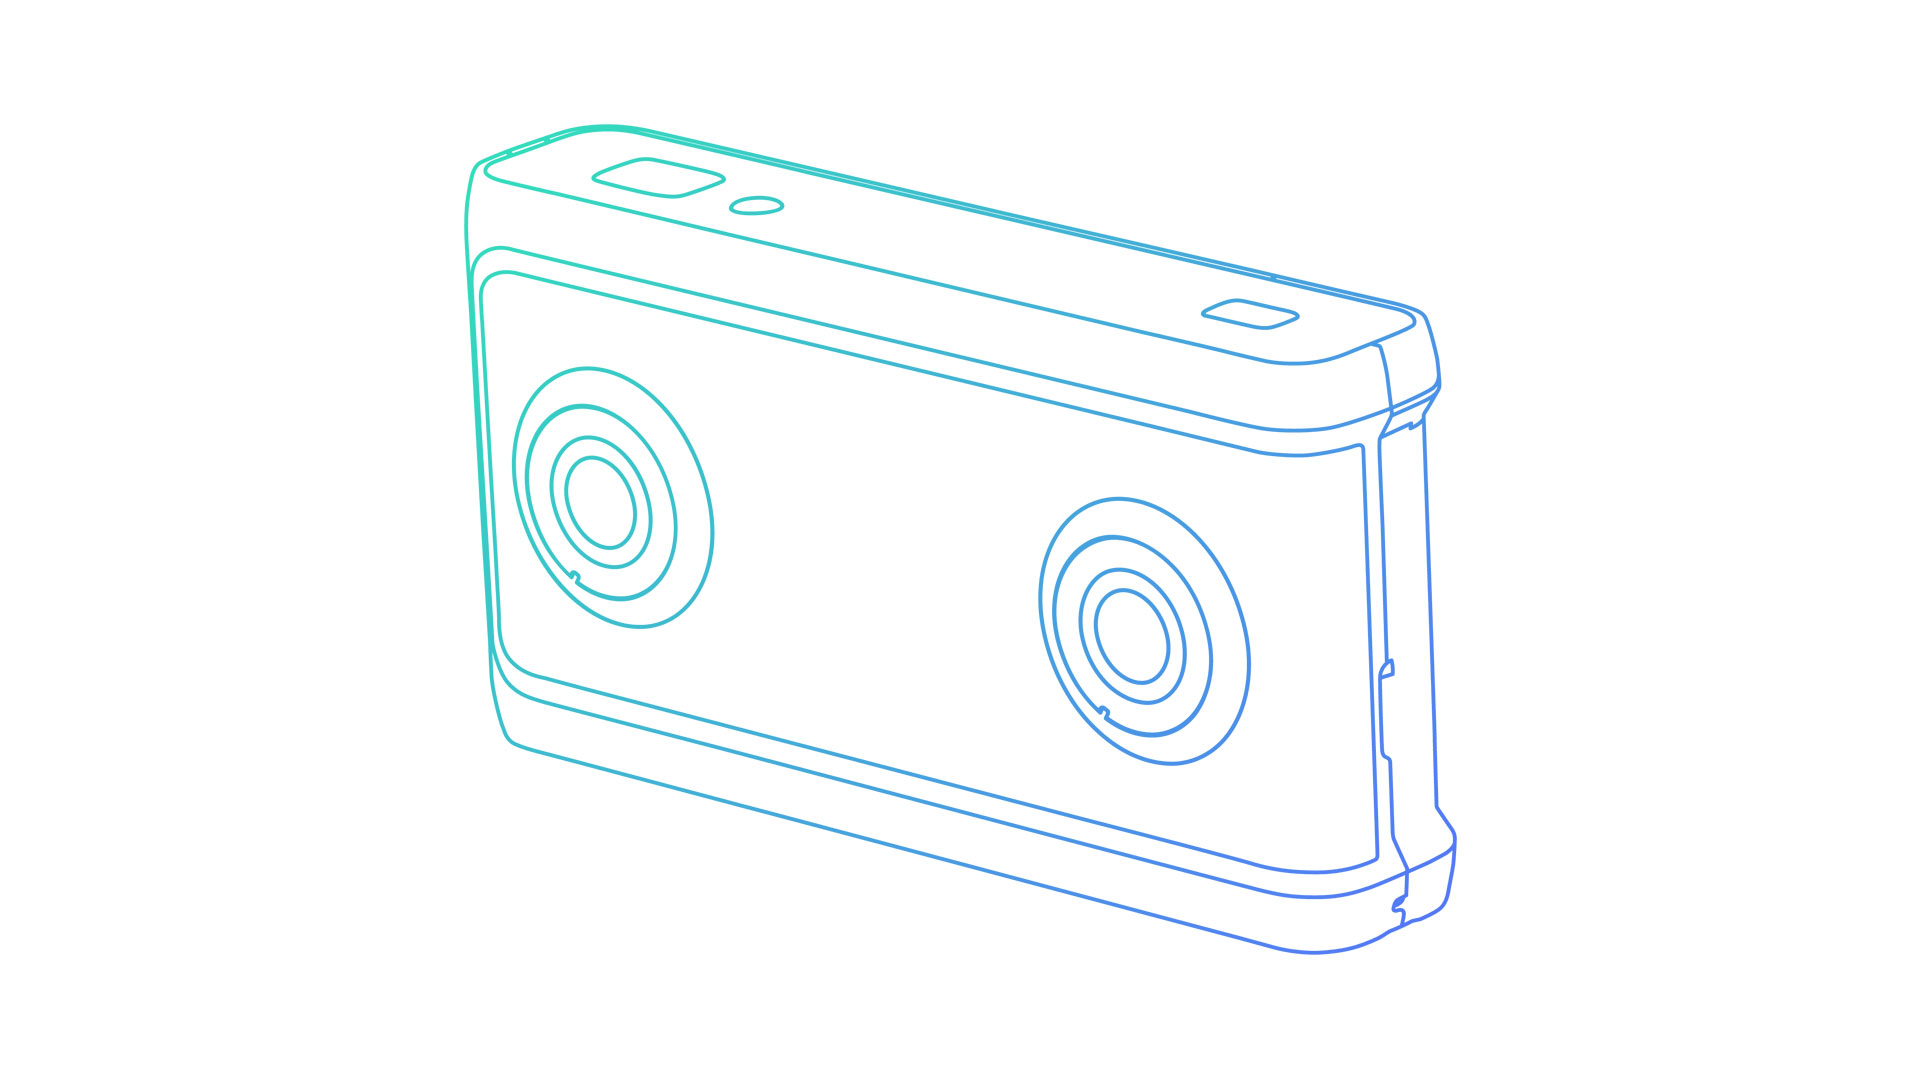 VR 180 camera concept